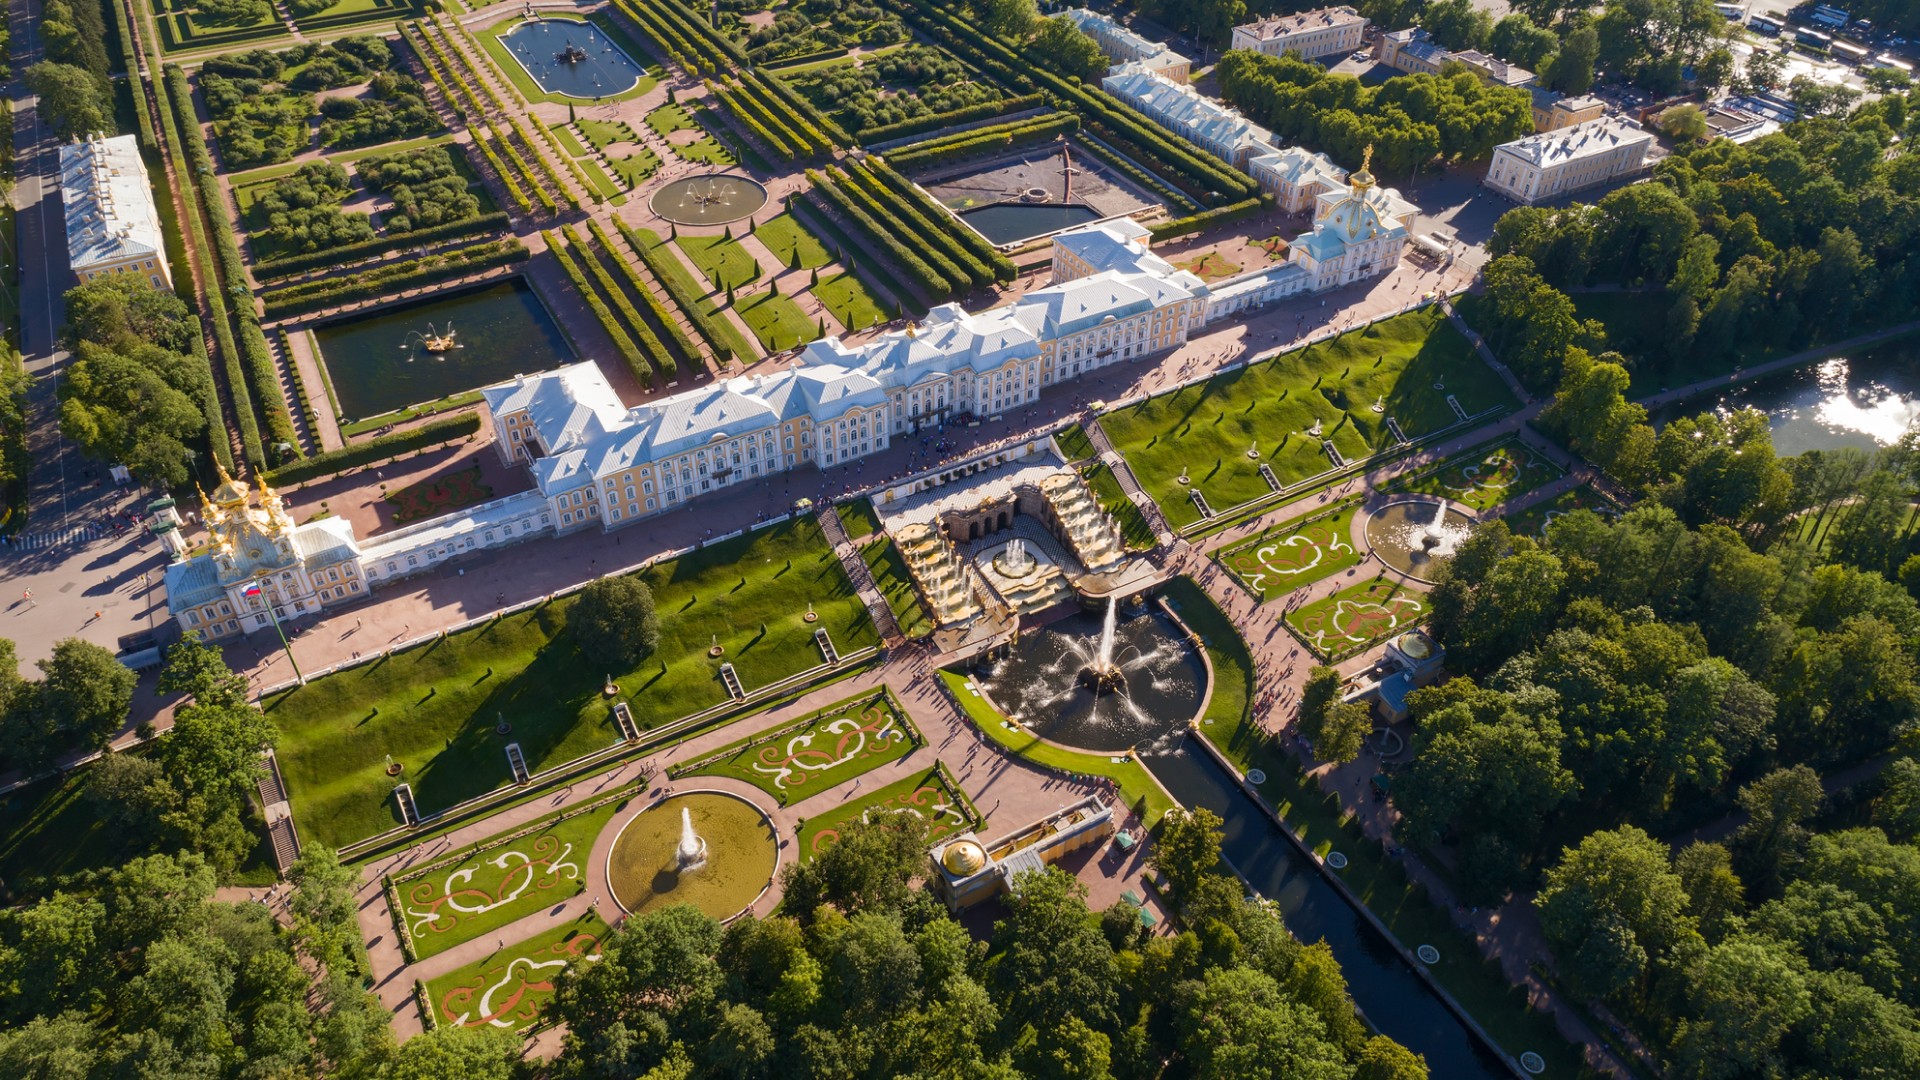 Петергоф - русский Версаль: великолепные виды на залив и шедевры дворцово-паркового искусства